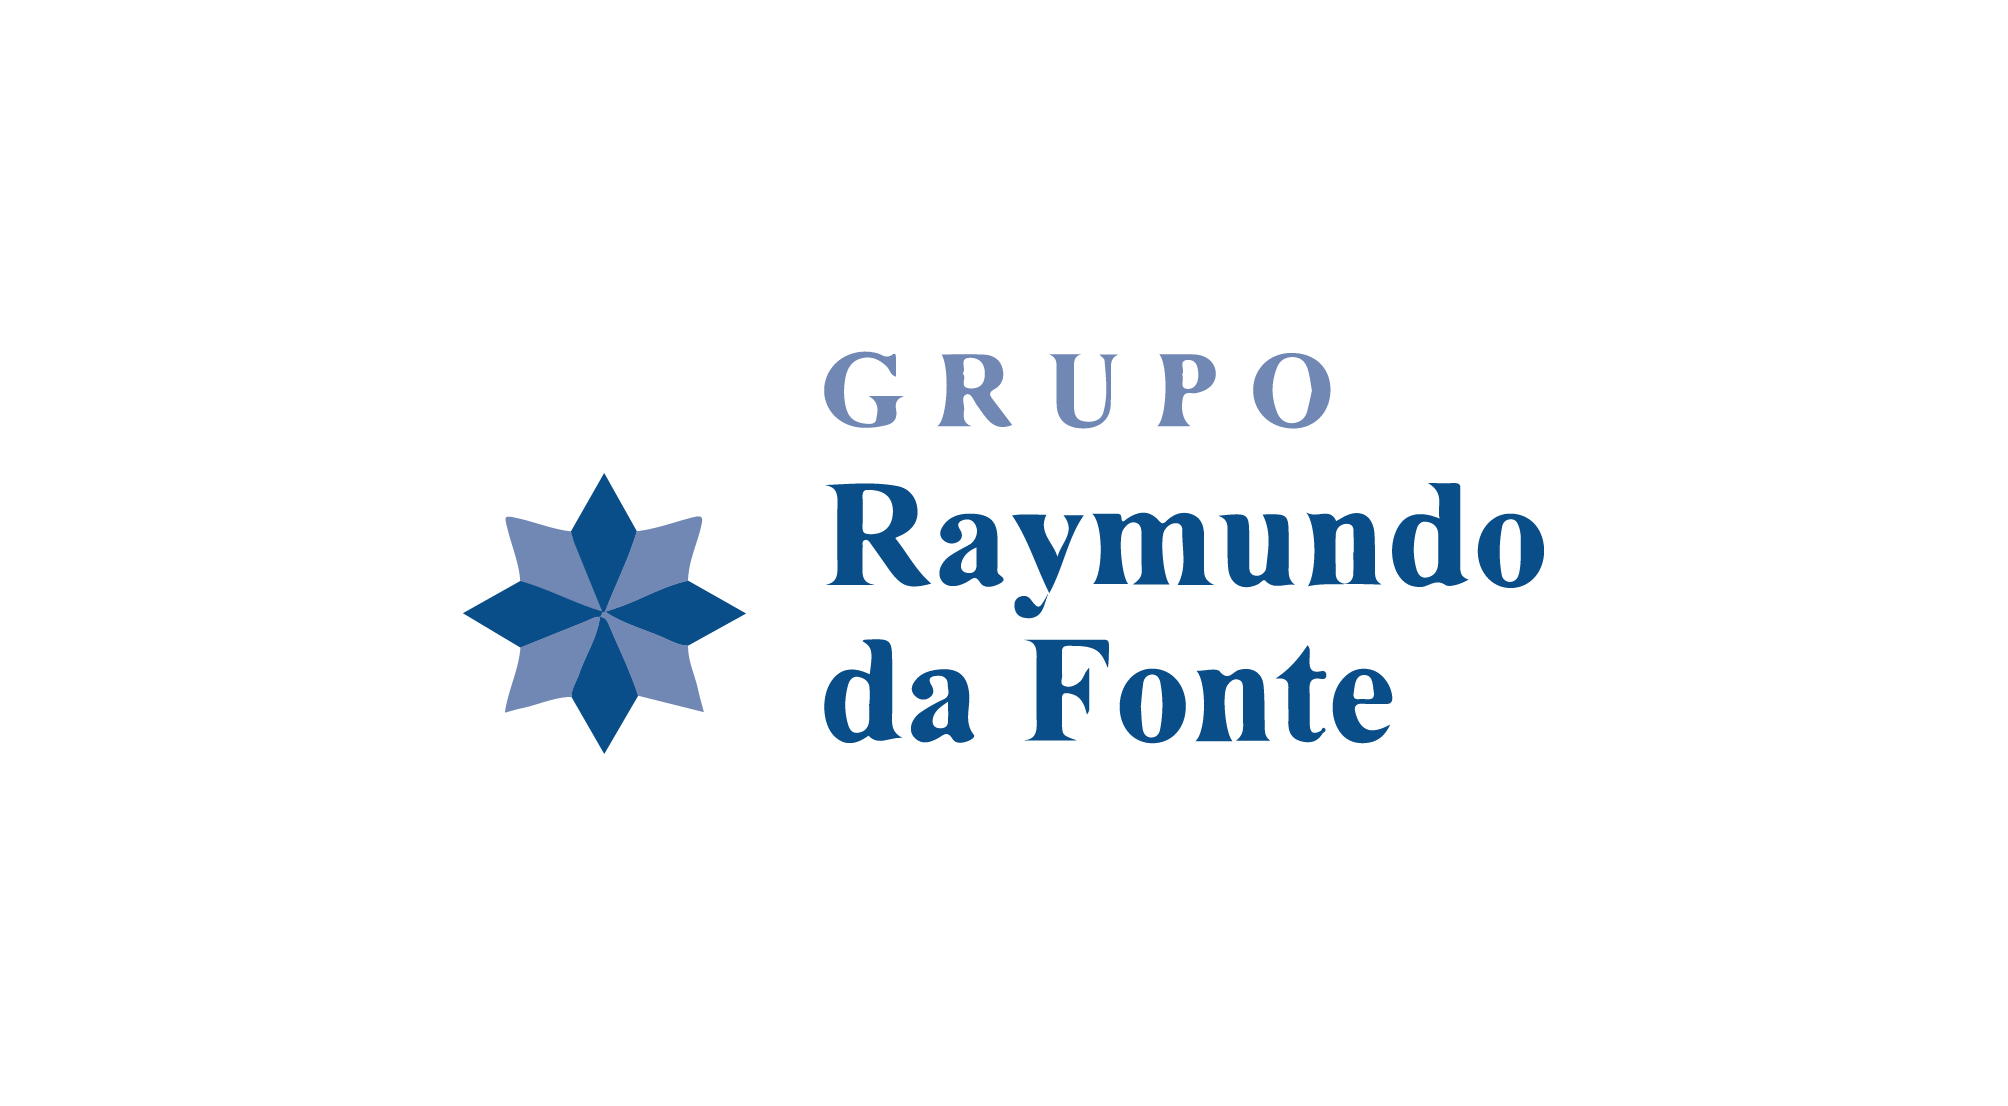 https://pravoce.nordestao.com.br/GRUPO RAYMUNDO DA FONTE